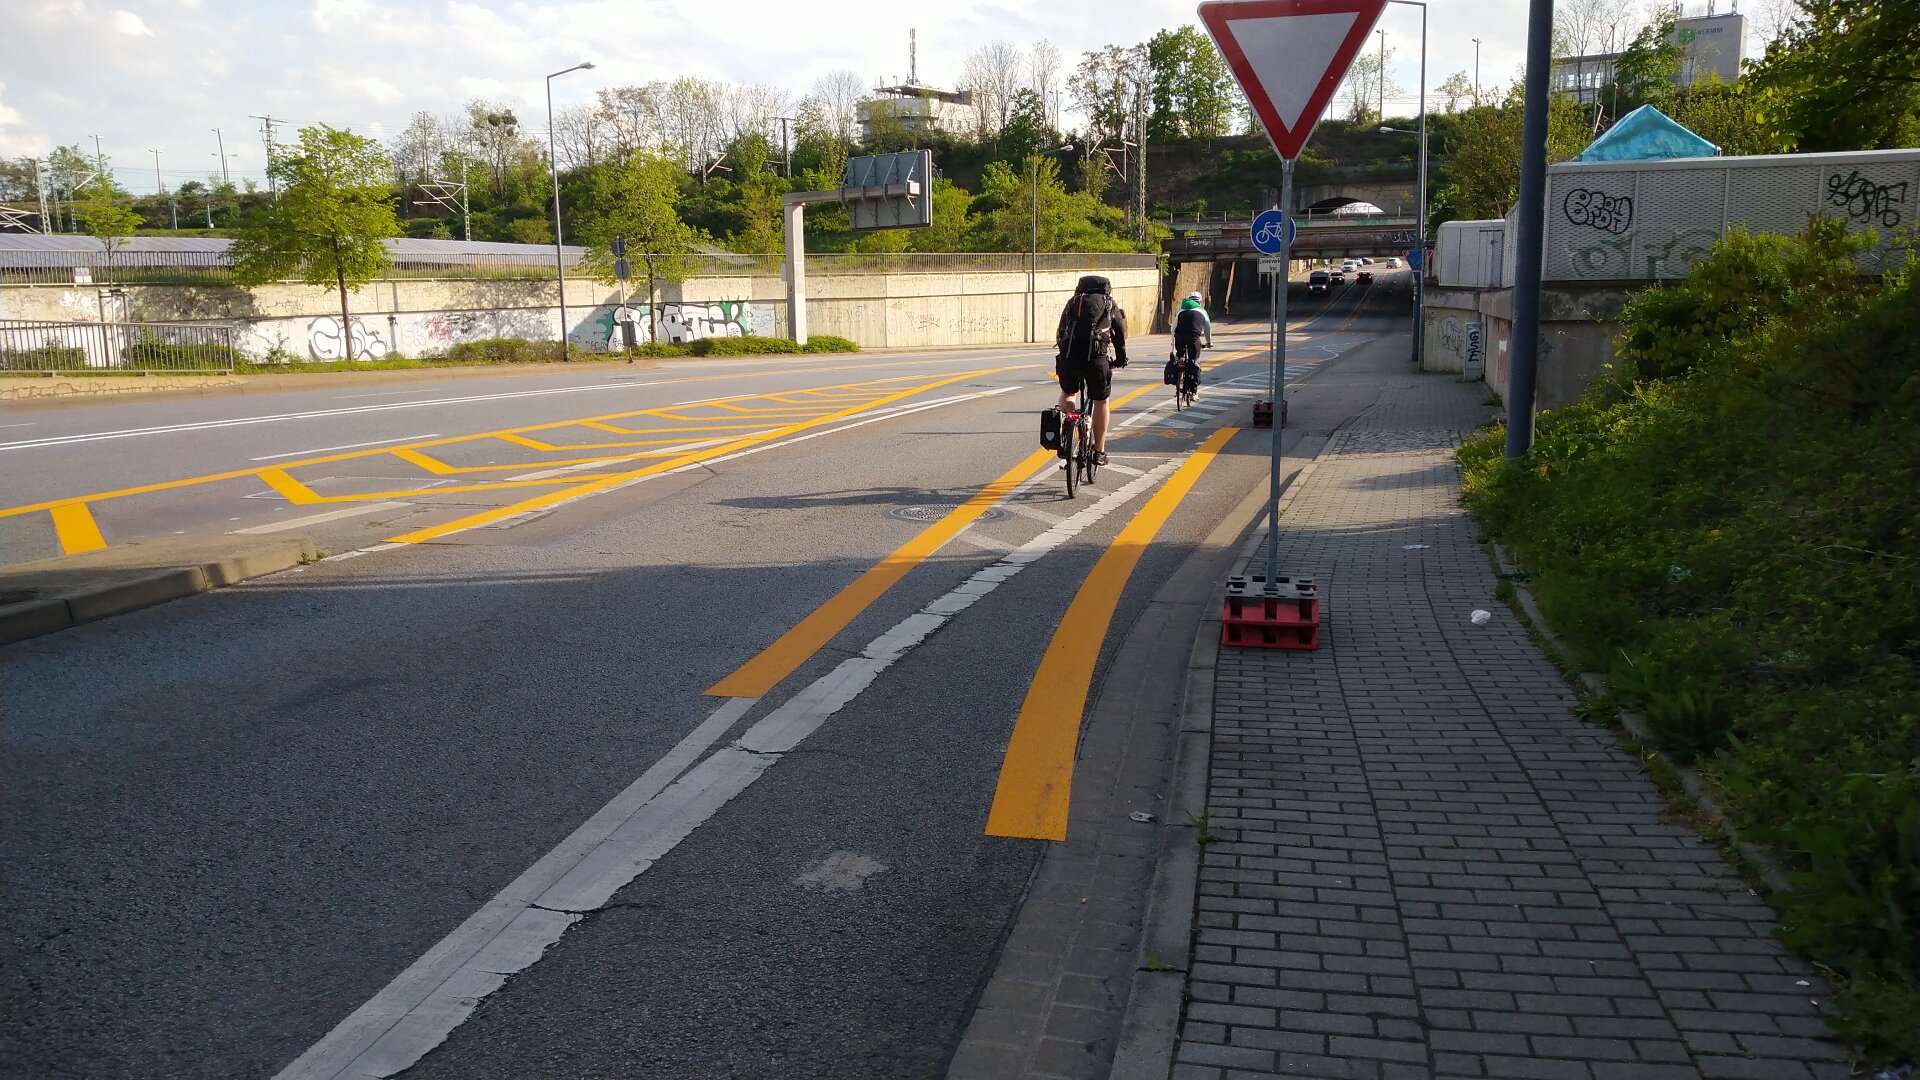 Straße mit vielen gelben Markierungen, zwei Radfahrer von hinten, keine Autos